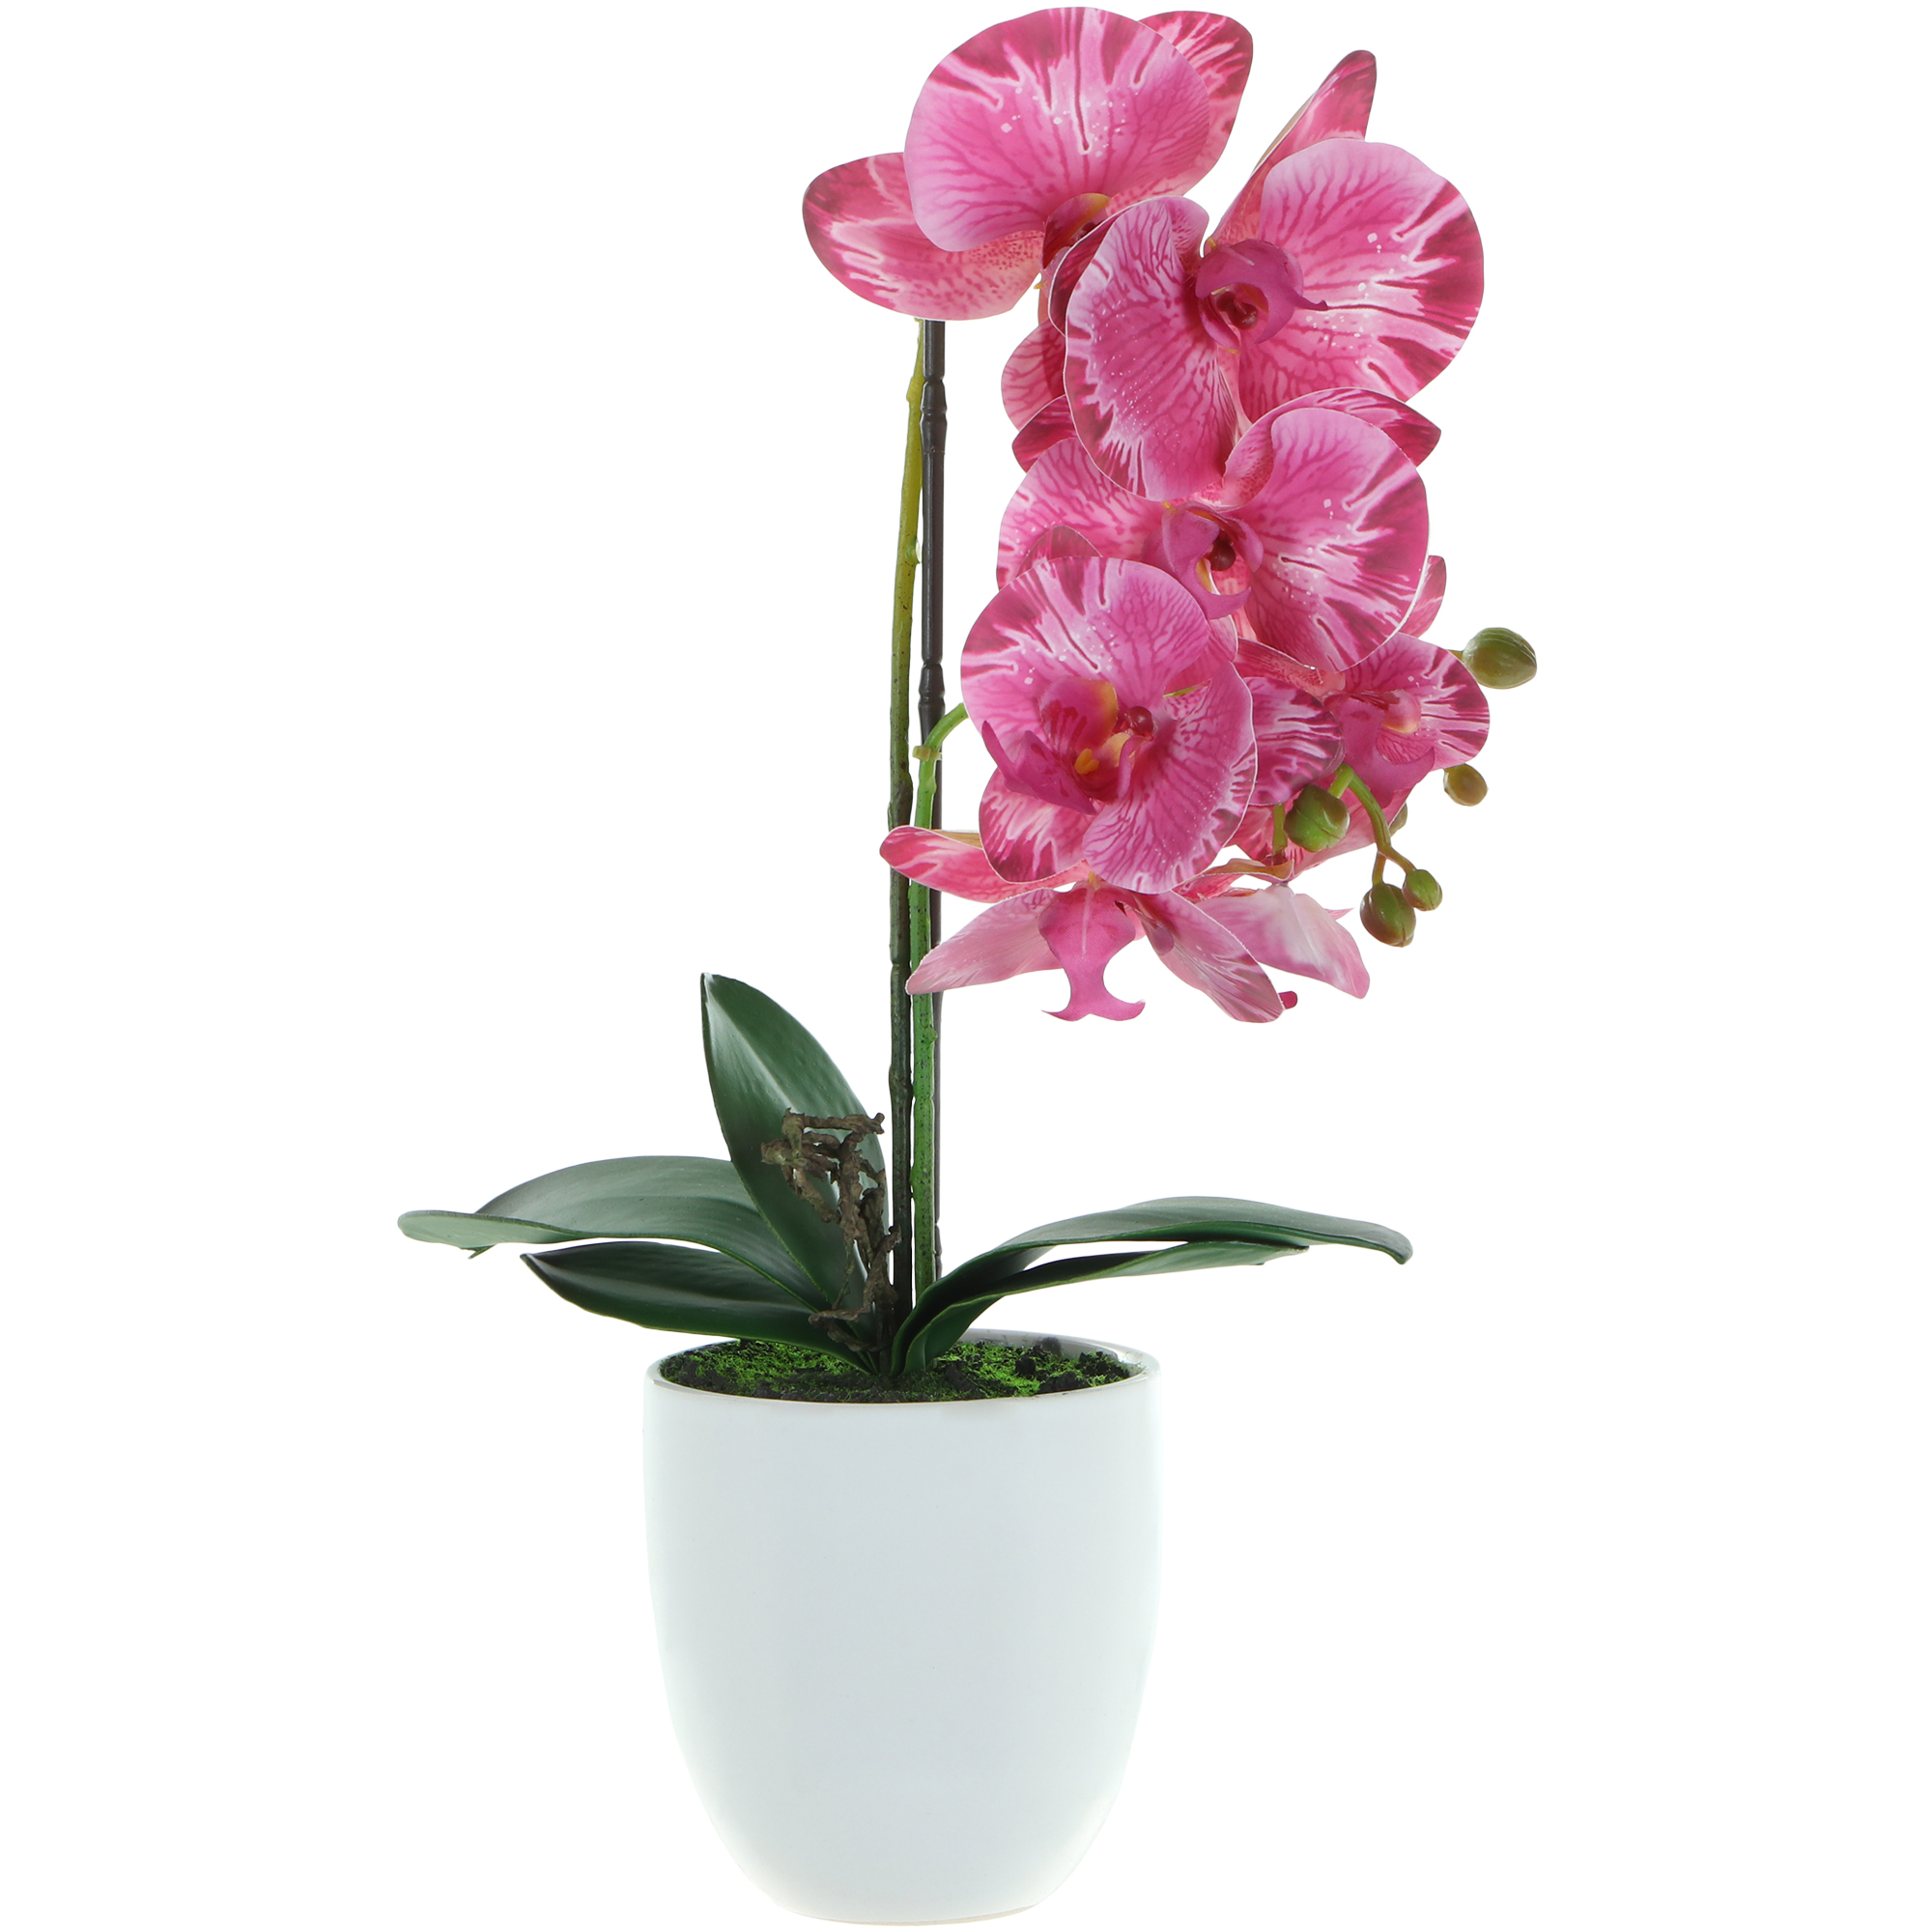 Цветок искусственный в горшке Fuzhou Light орхидея 2 цвета 54 см